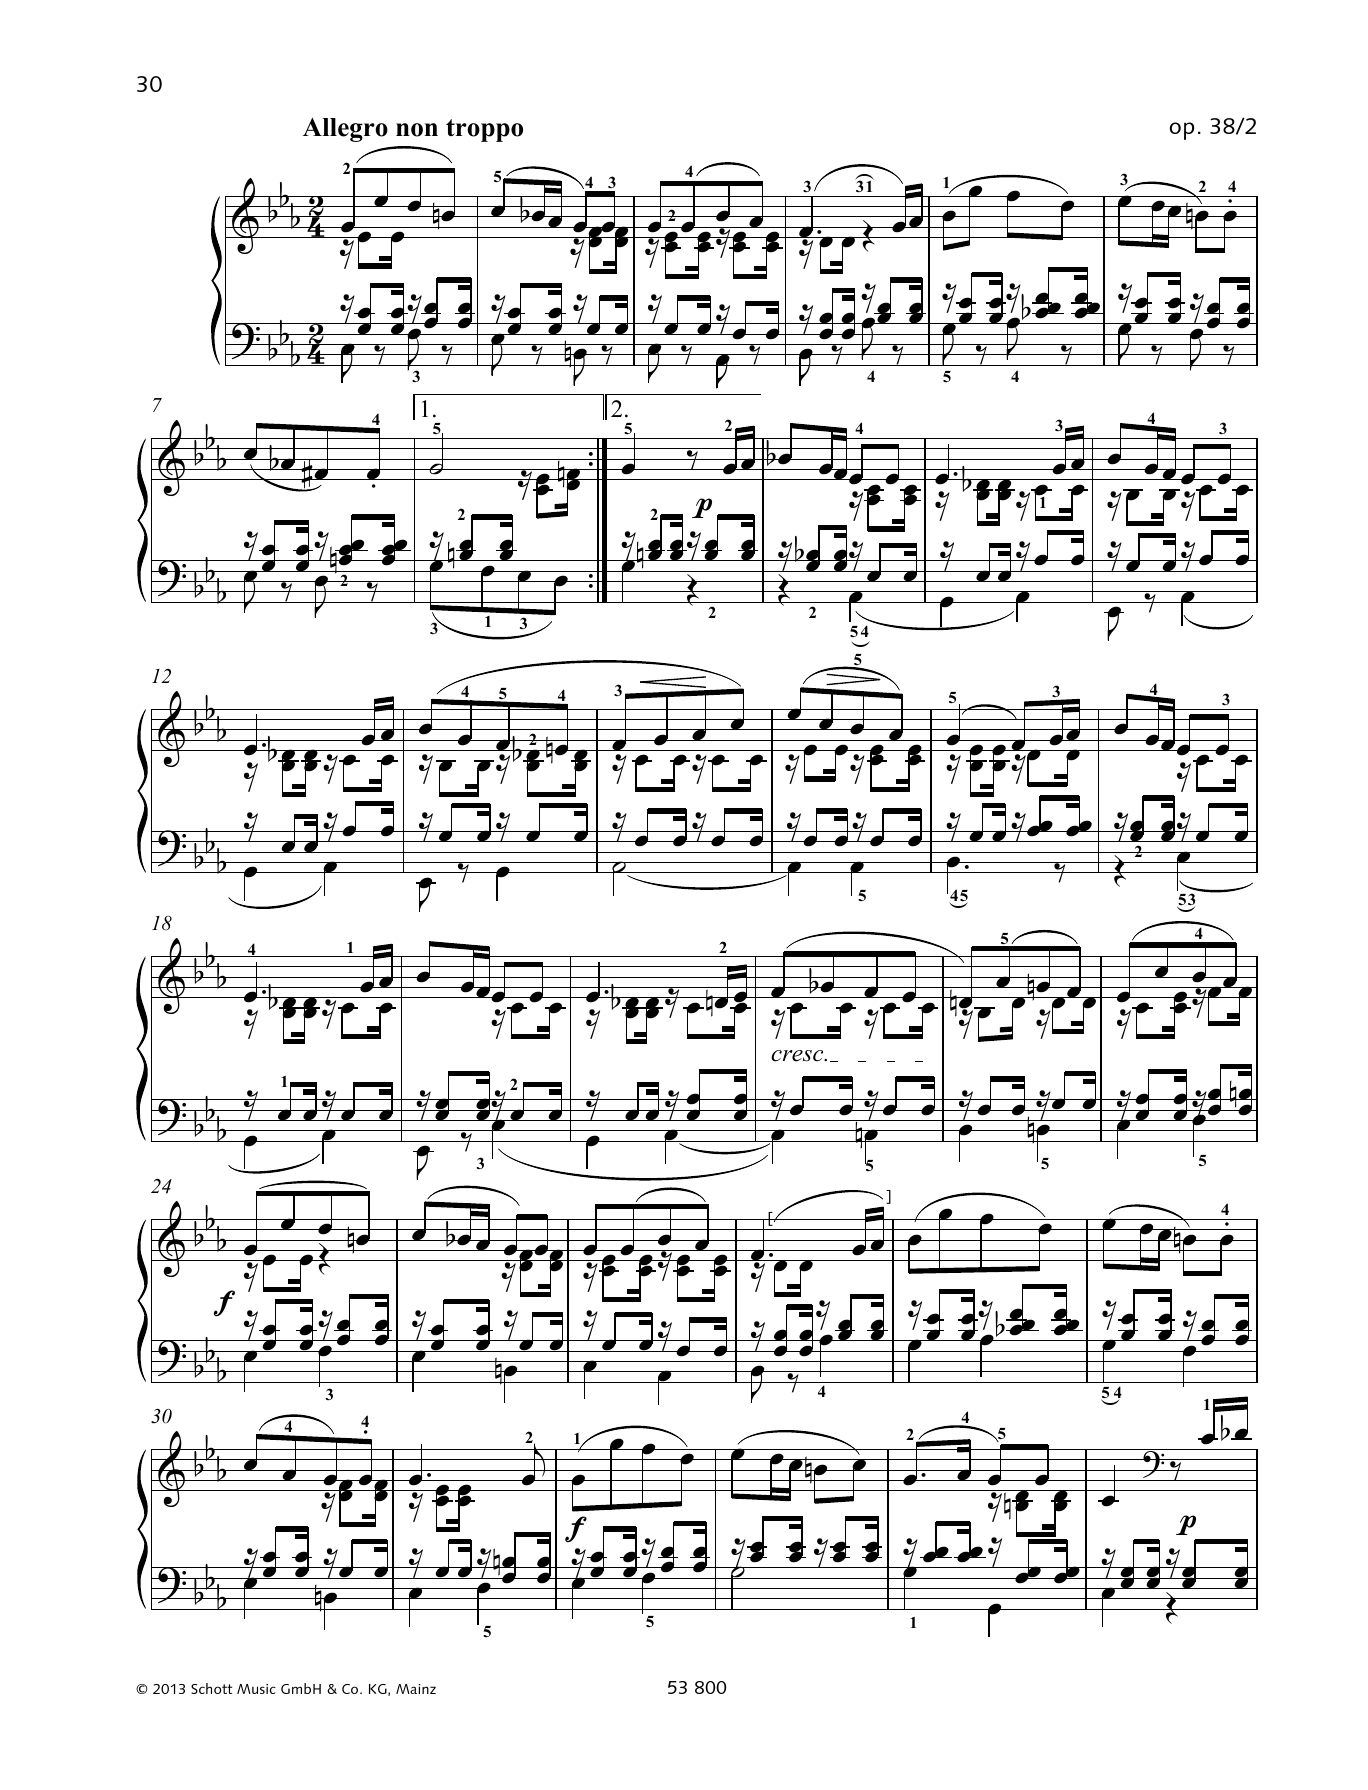 Download Felix Mendelssohn Bartholdy Allegro non troppo Sheet Music